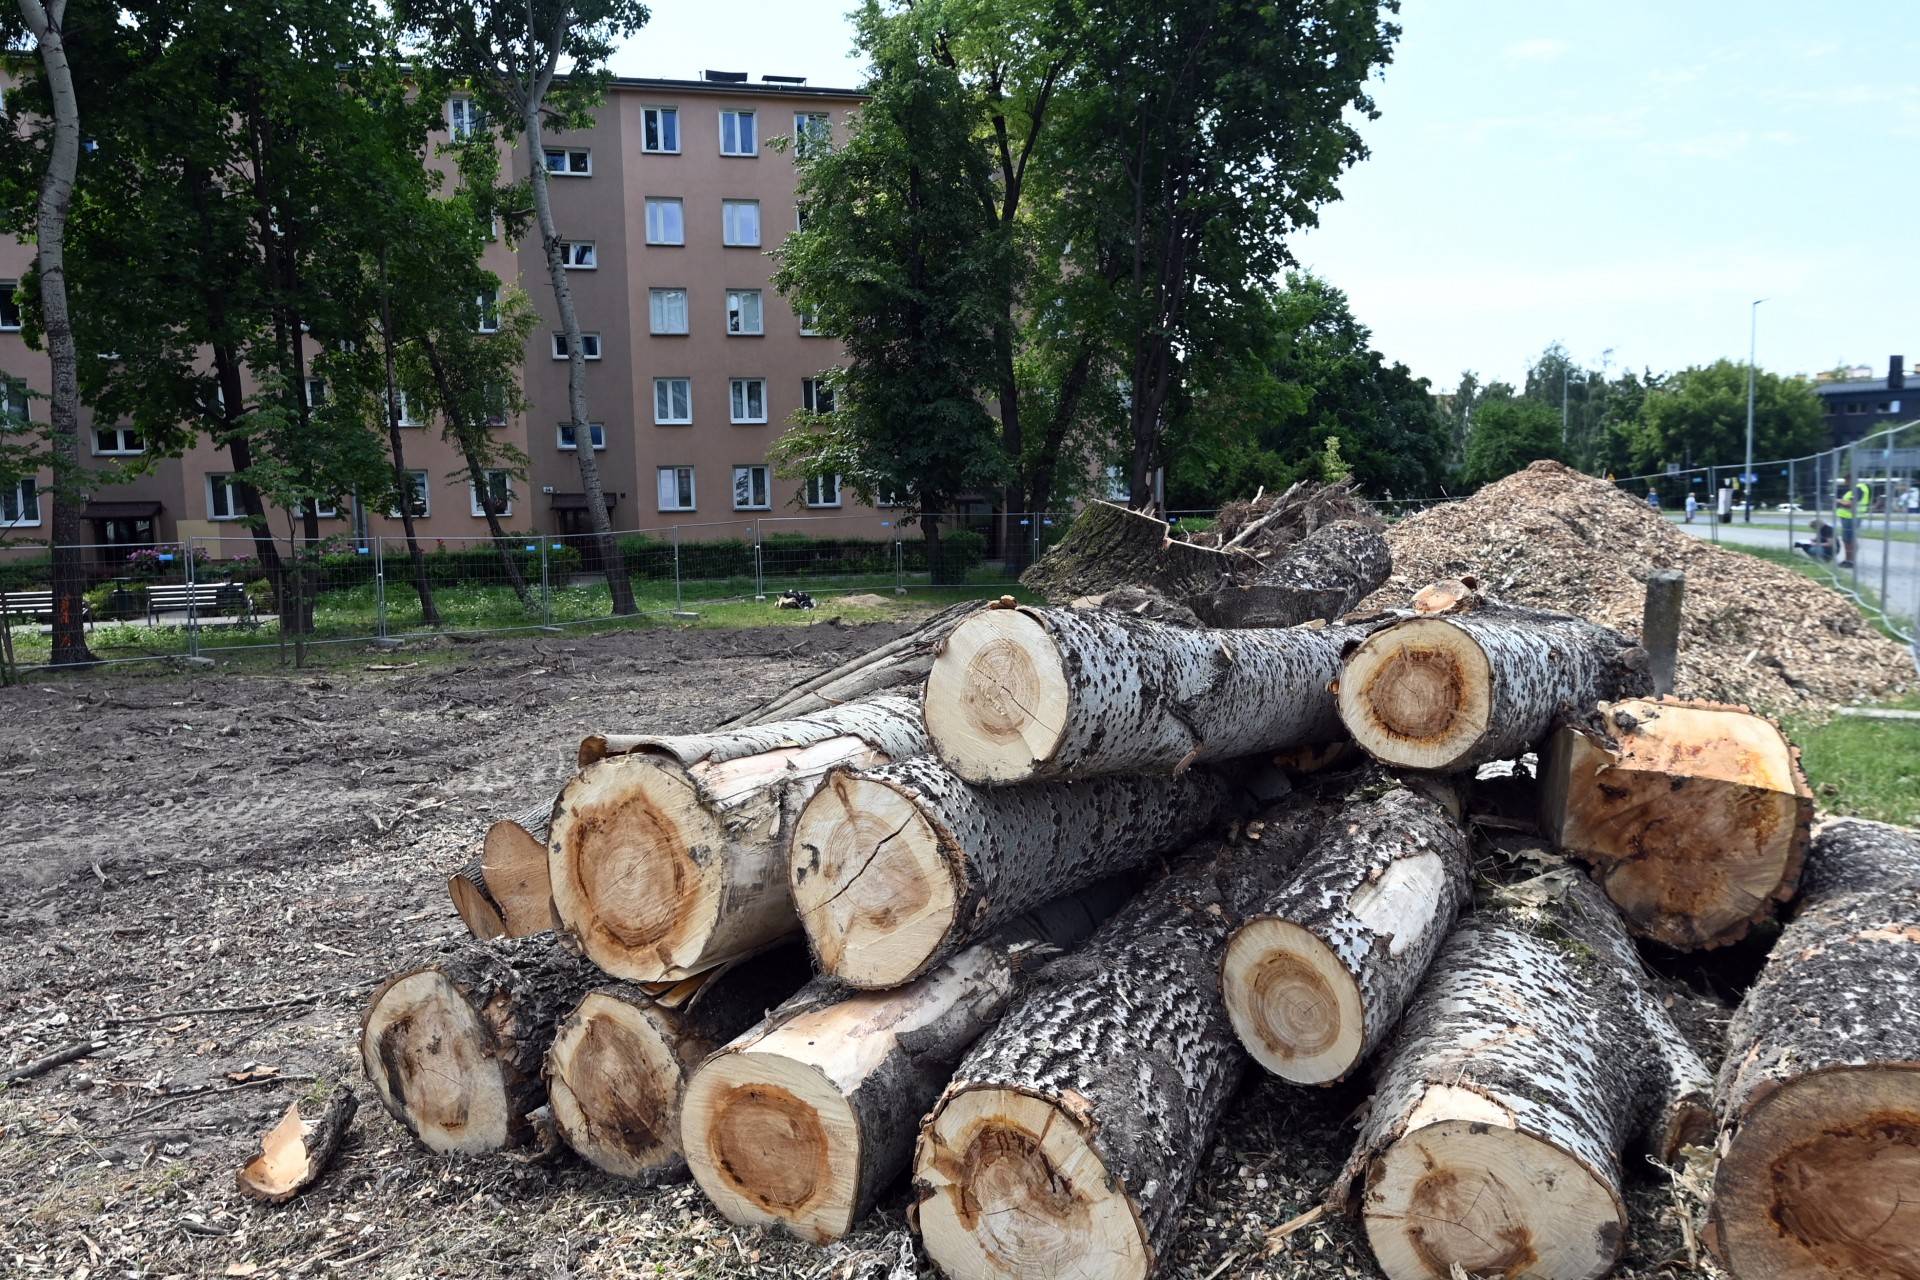 Wycinka drzew na budowie linii tramwajowej do Mistrzejowic, zdaniem aktywistów niepotrzebna